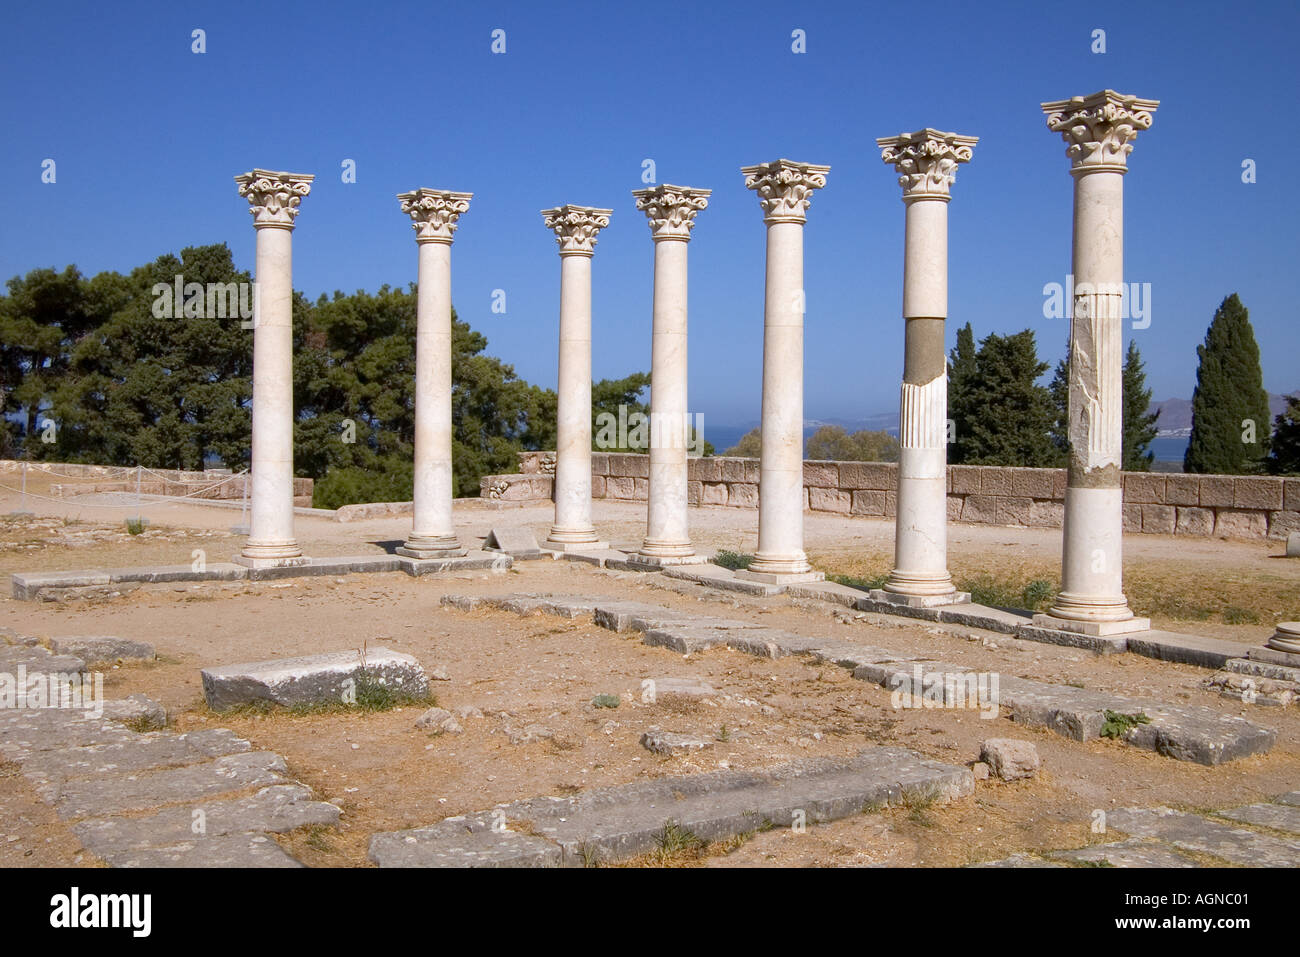 dh Tempel von Apollo ASKLEPEION GRIECHENLAND KOS Tempel von Apollo ruinierte Säulen zweite Terrasse antike Schule griechische Ruine Ort Ruinen Stockfoto